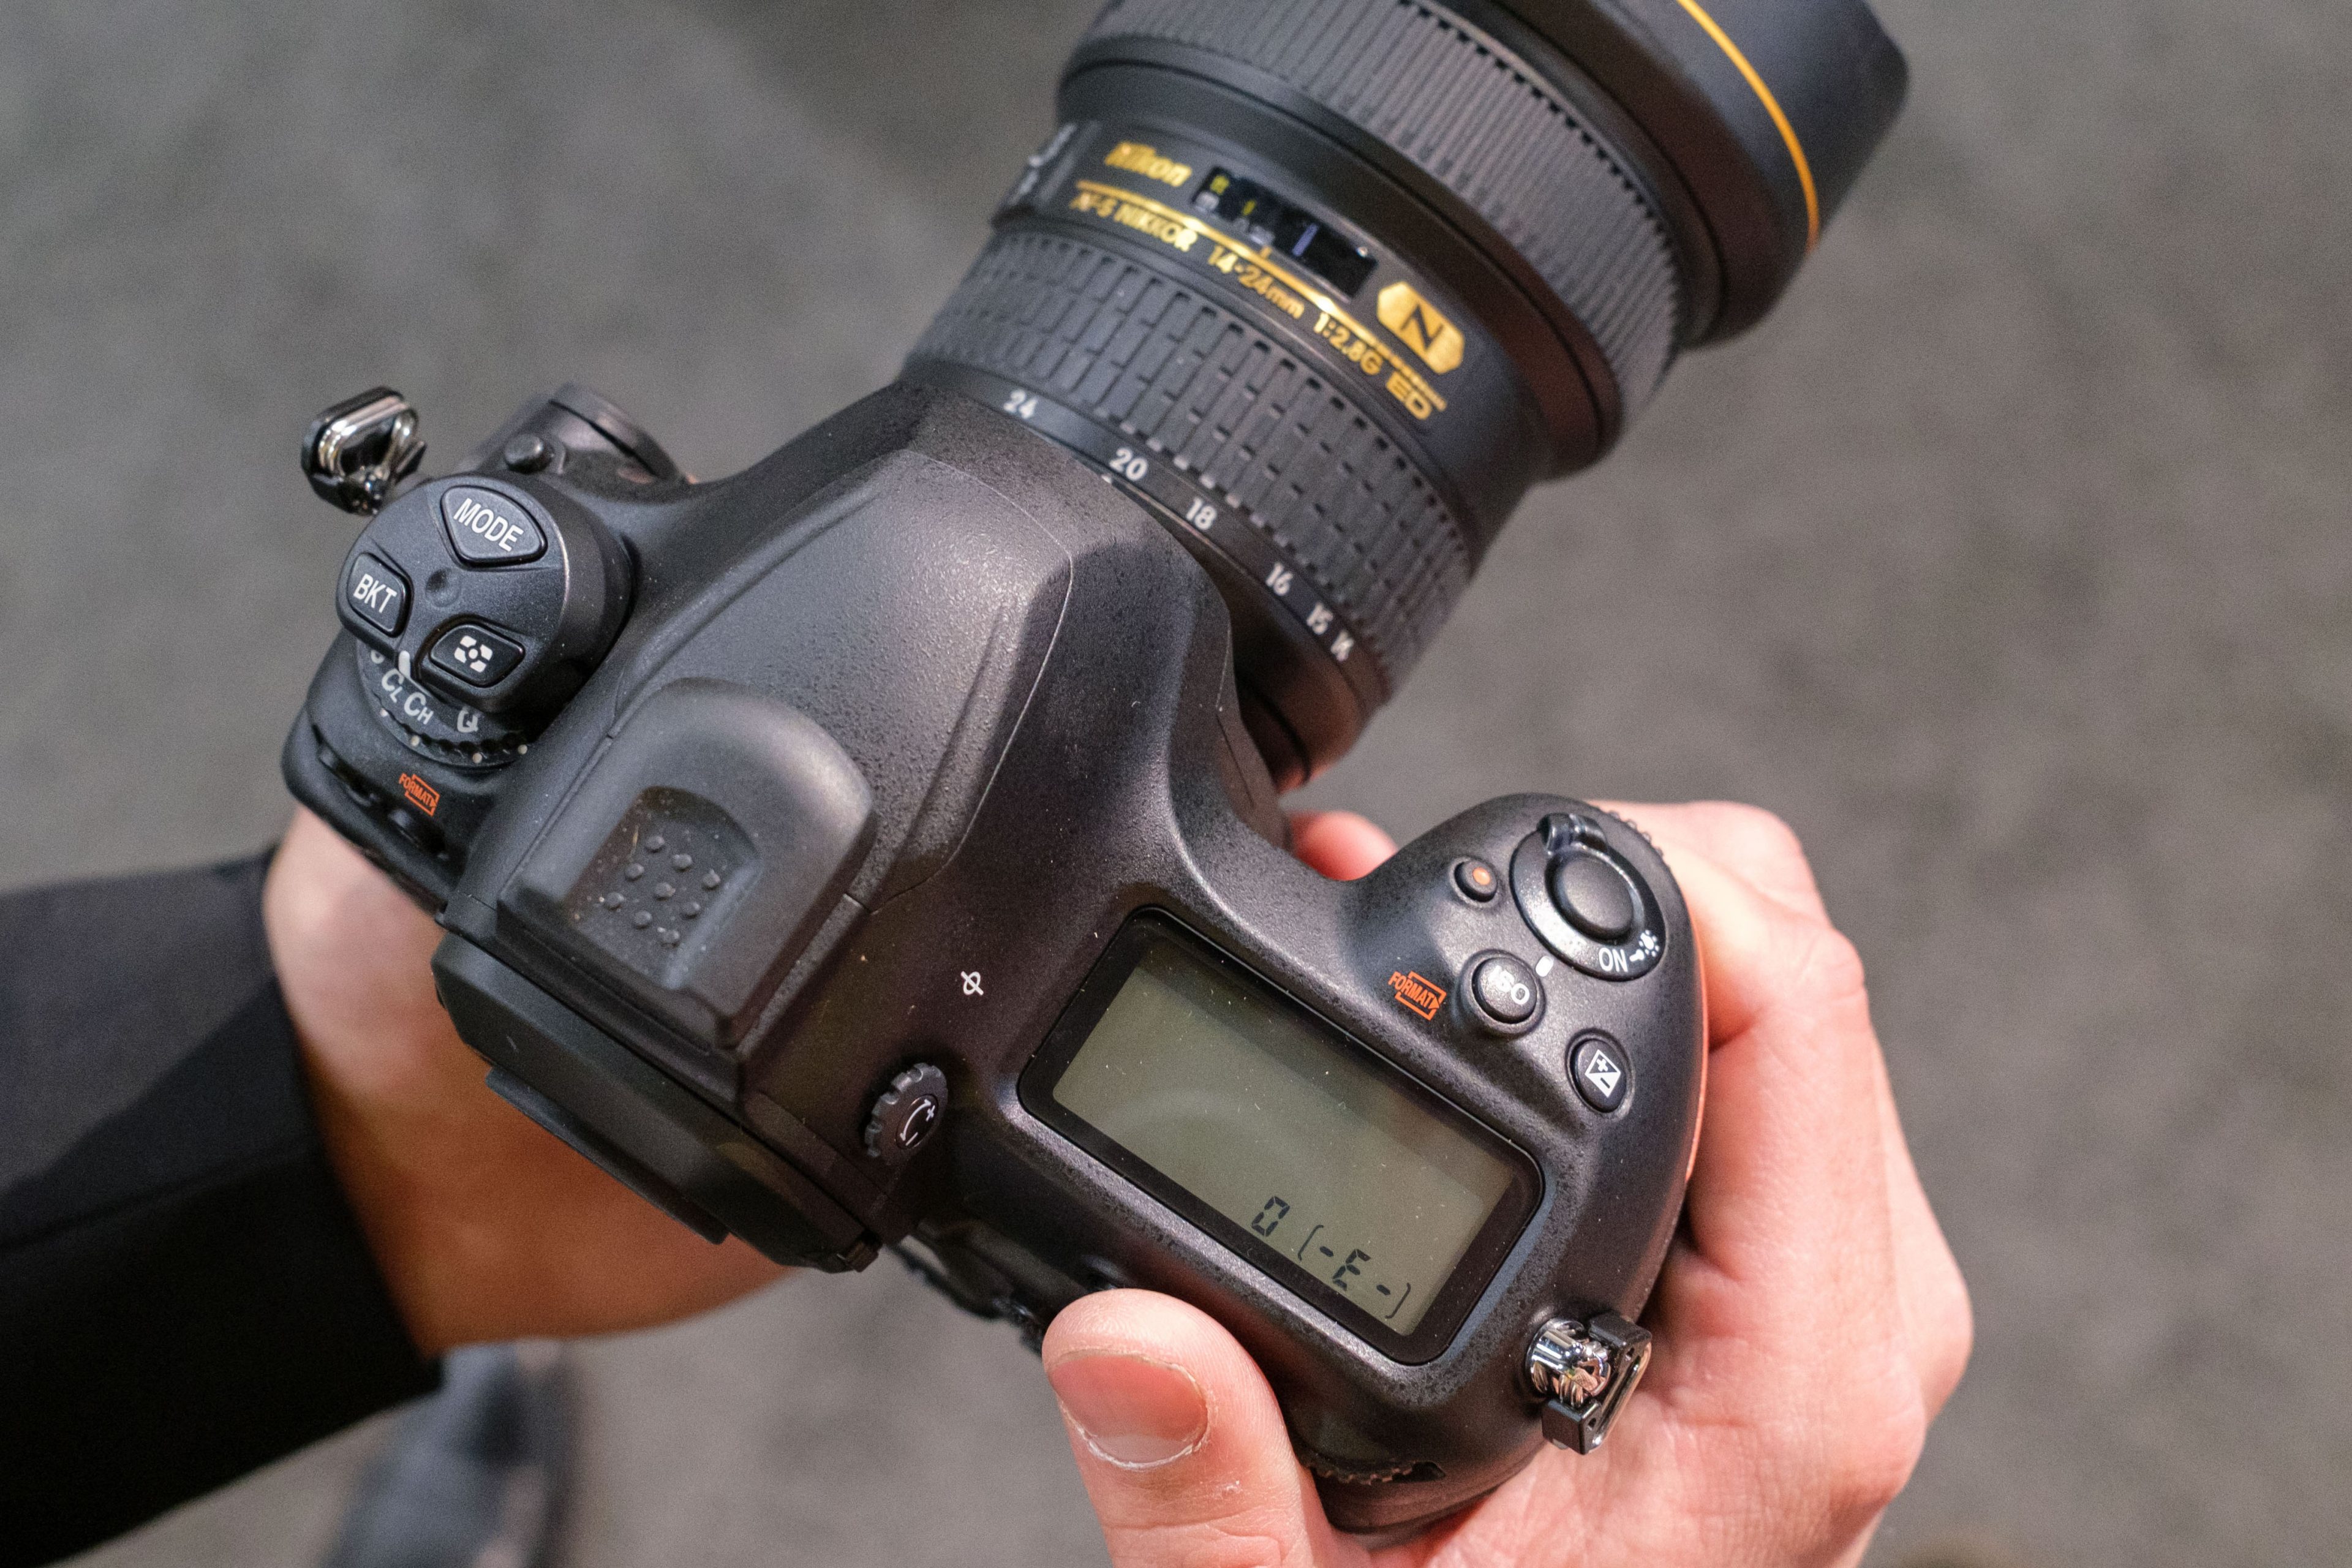 Nikon xác nhận những chiếc máy ảnh D6 đầu tiên tới tay khách hàng vào cuối tháng 5